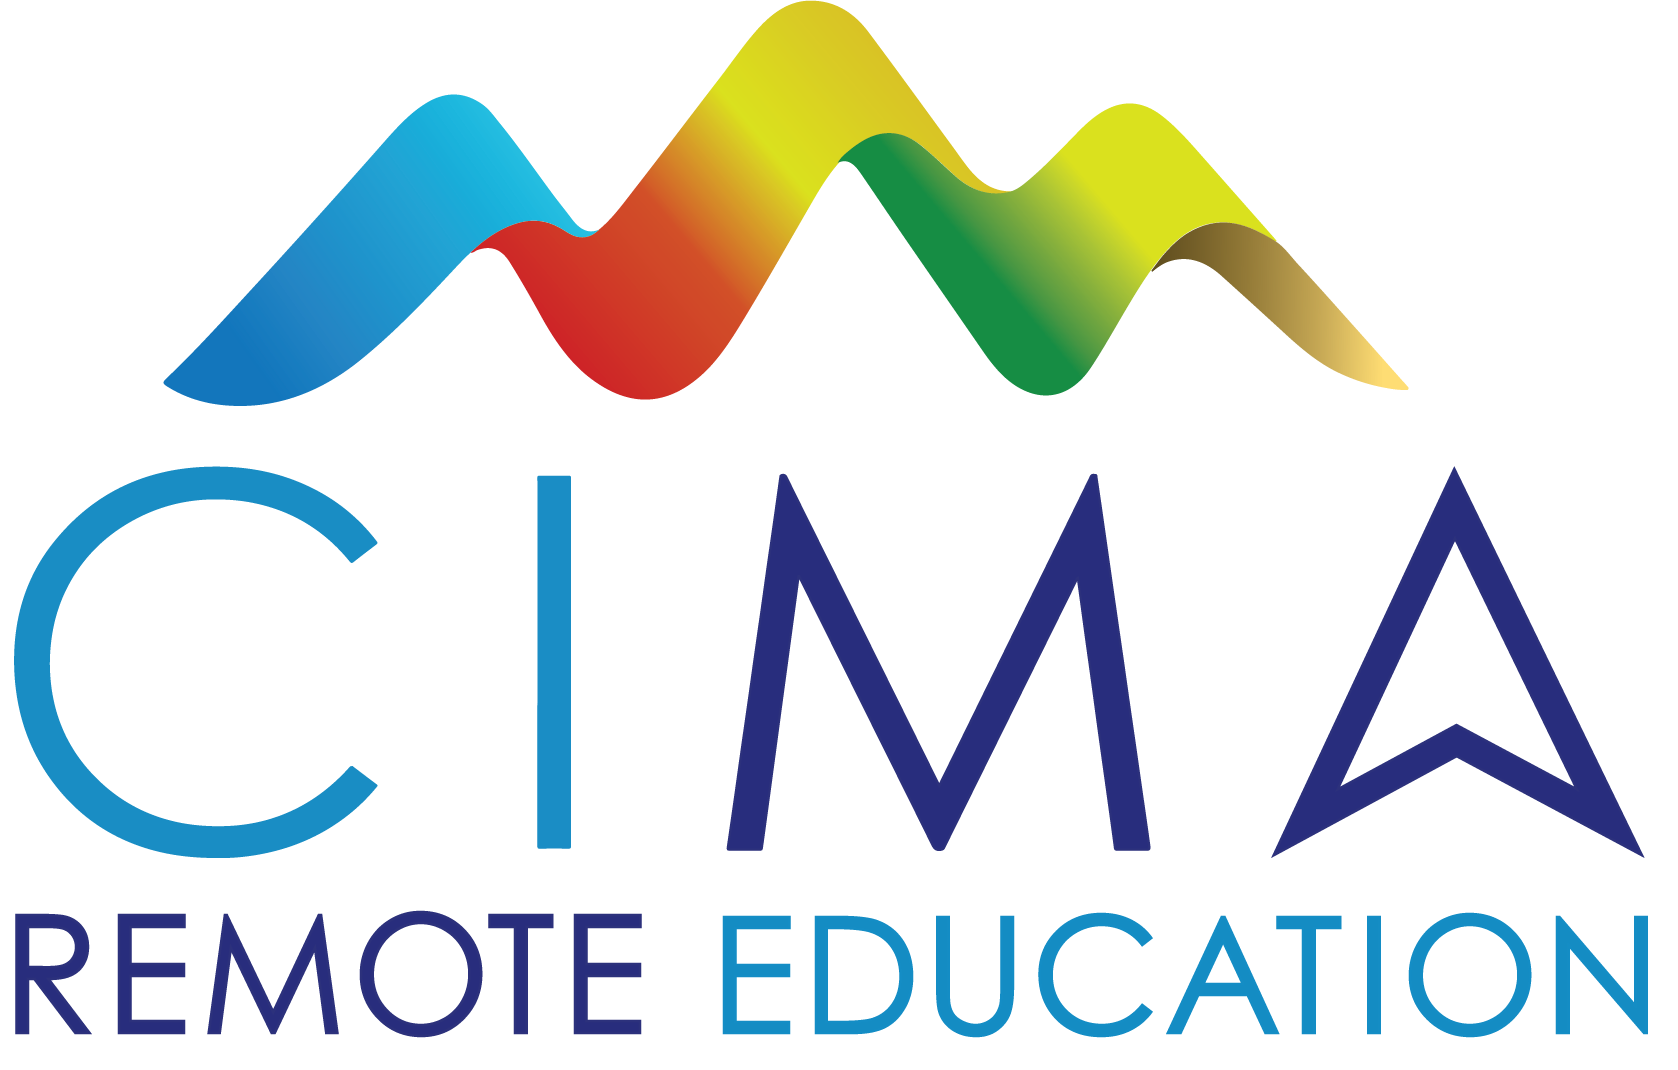 CIMA Remote Education